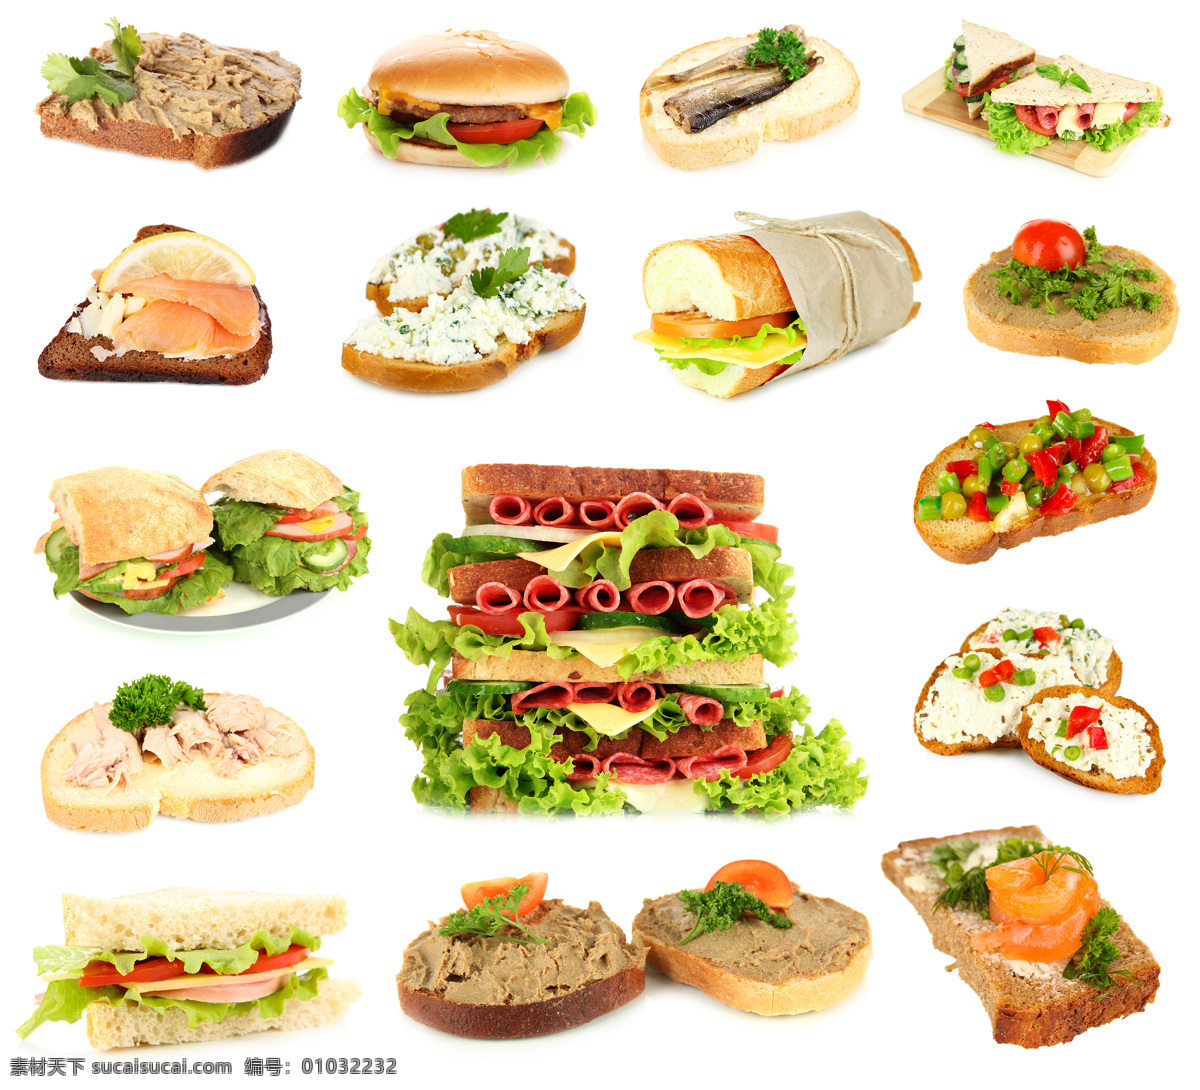 各种 美味 三明治 蔬菜 蛋糕 面包 美食 食物 汉堡 餐饮 快餐 点心 食材原料 餐饮美食 外国美食